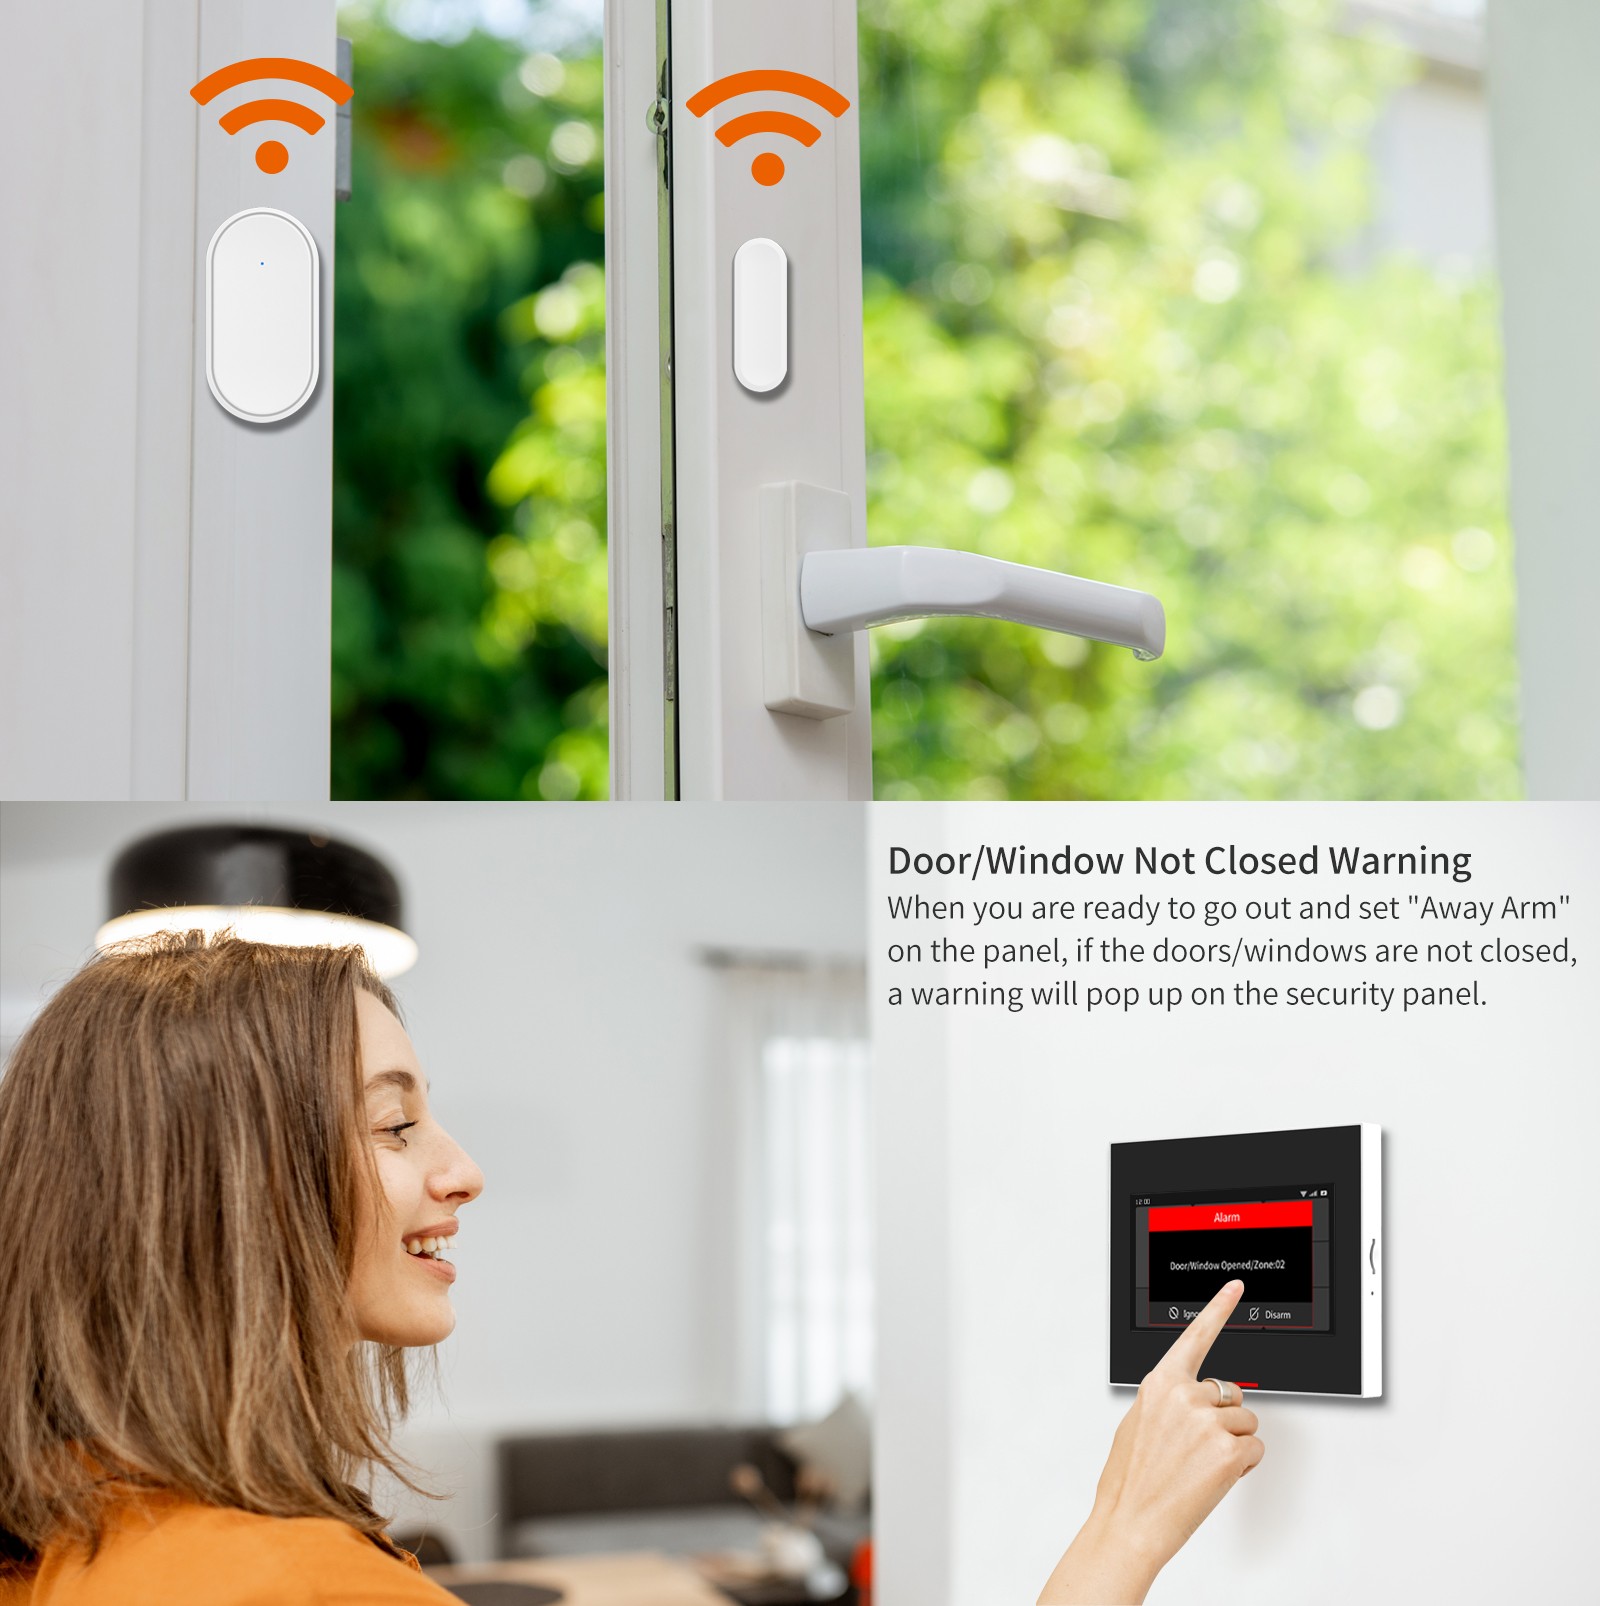 Ostaniot Tuya 433Mhz Automatic Home Alarm System Smart Wireless Sensor Door and Window Detector Door Open/Close Code